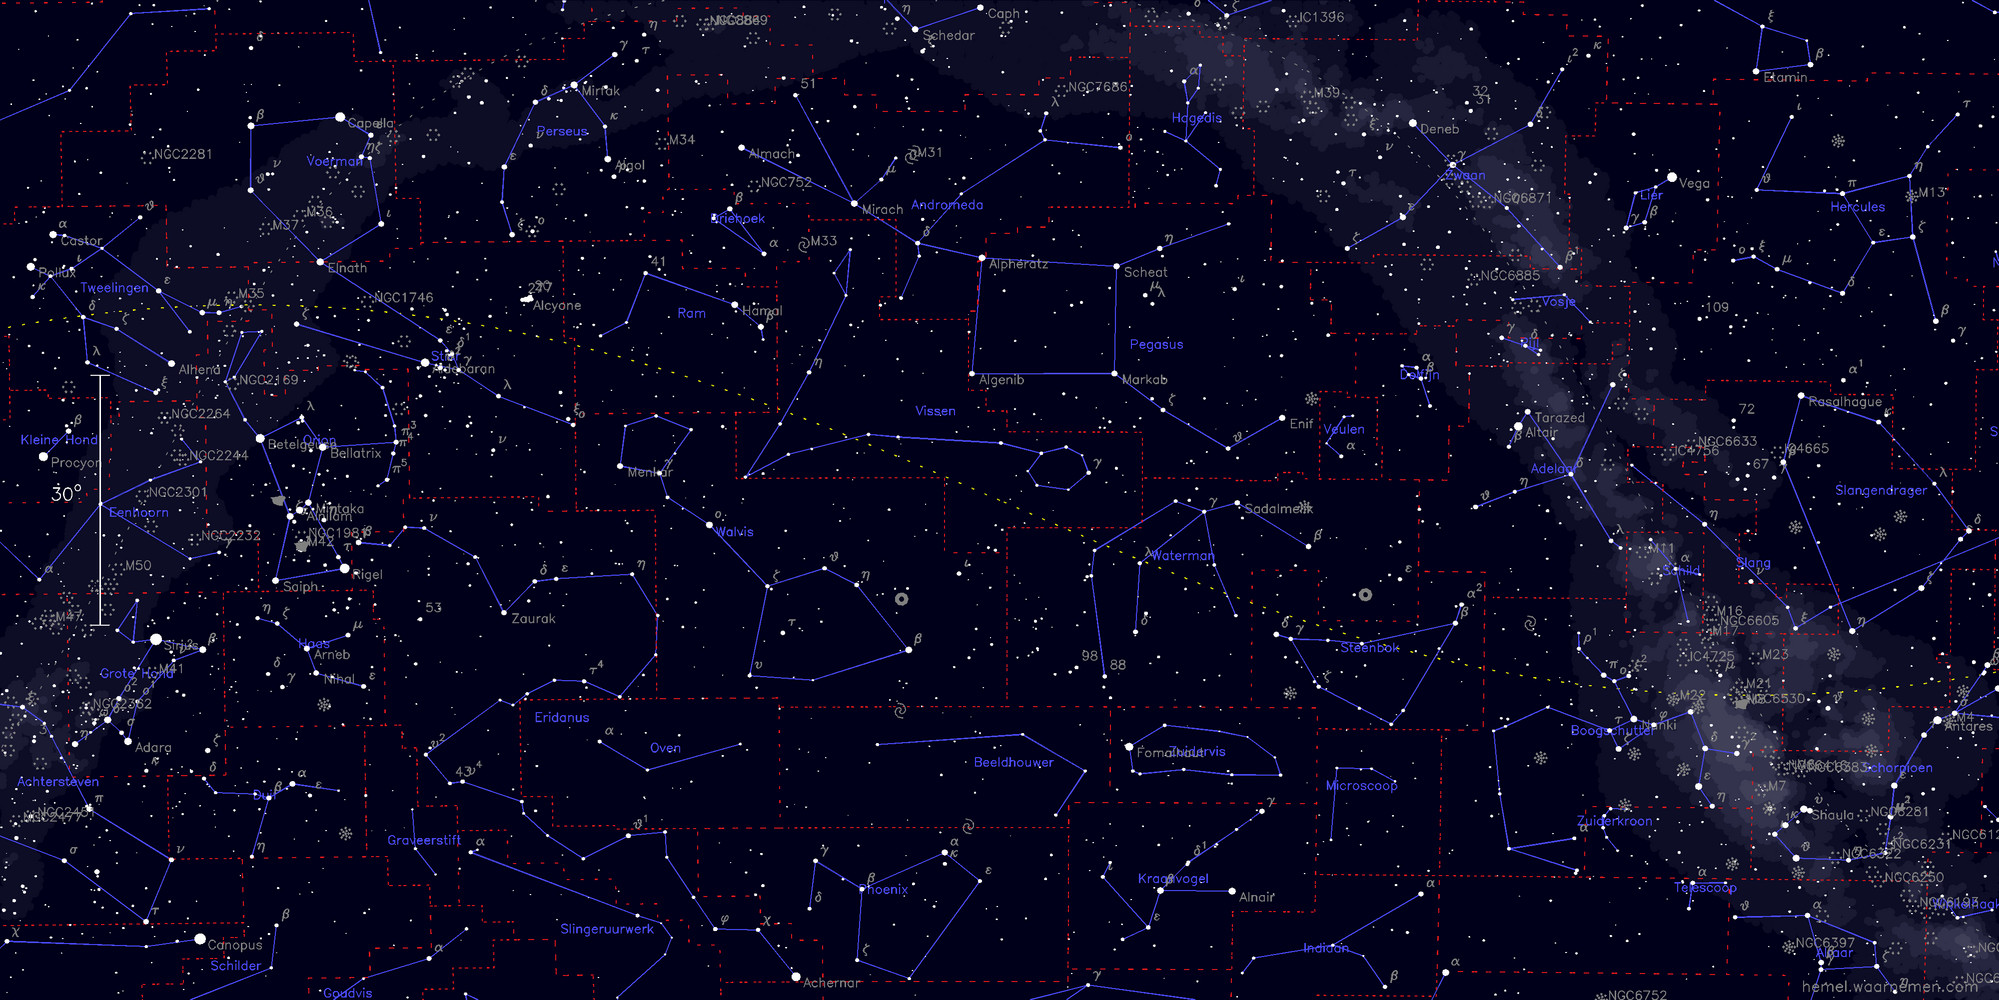 Kaart van de vaste sterrenhemel - afbeelding niet gevonden, klik om te sluiten